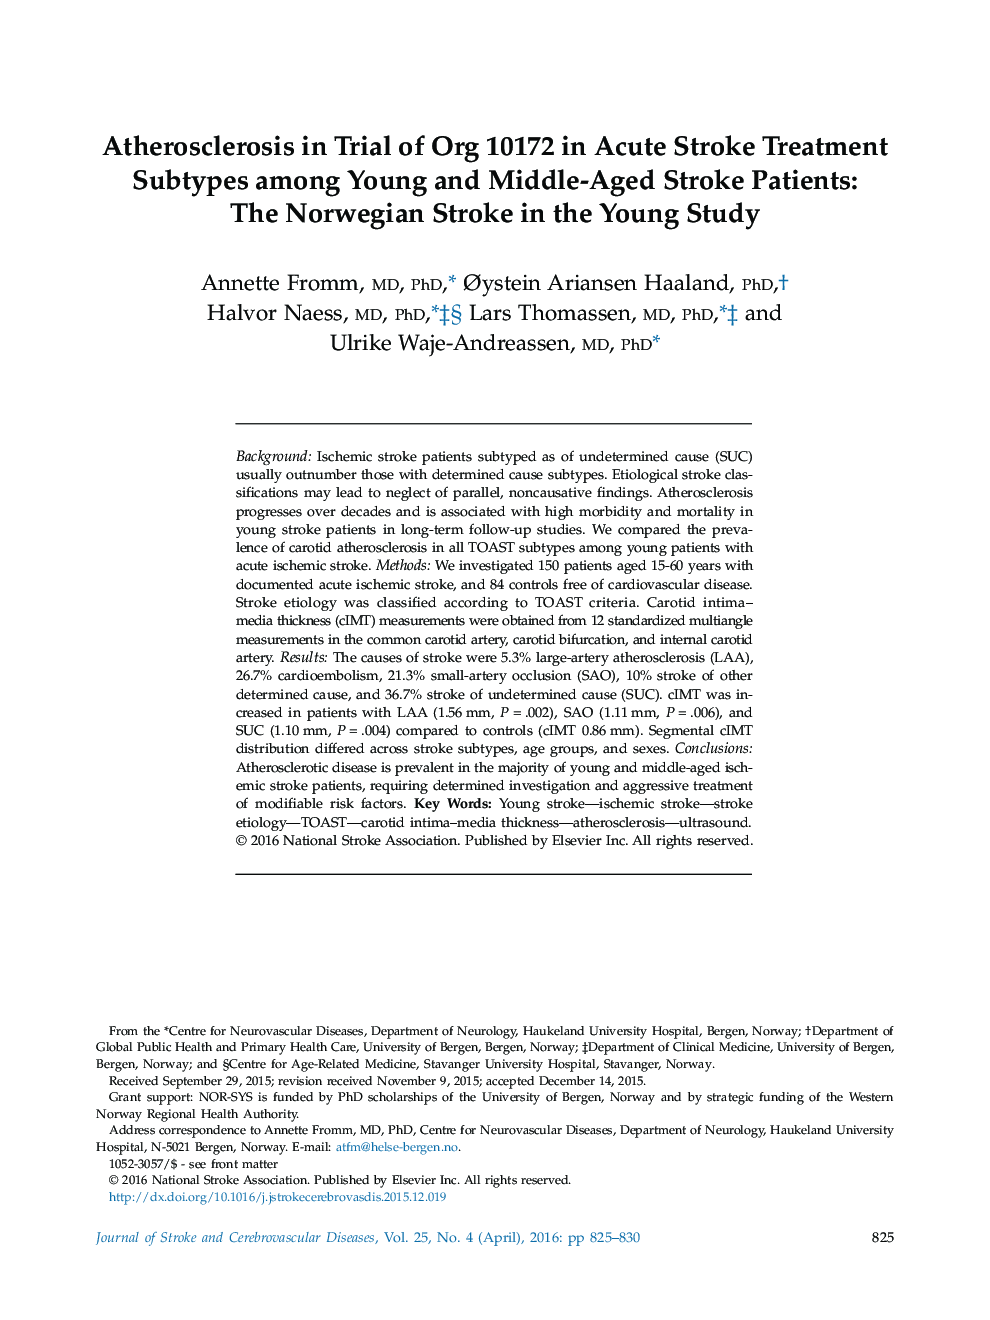 آترواسکلروز در آزمایش سازمان 10،172 در زیرگروه های درمان سکته مغزی حاد در میان بیماران سکته مغزی جوان و میانسال: سکته مغزی نروژی در مطالعه جوان